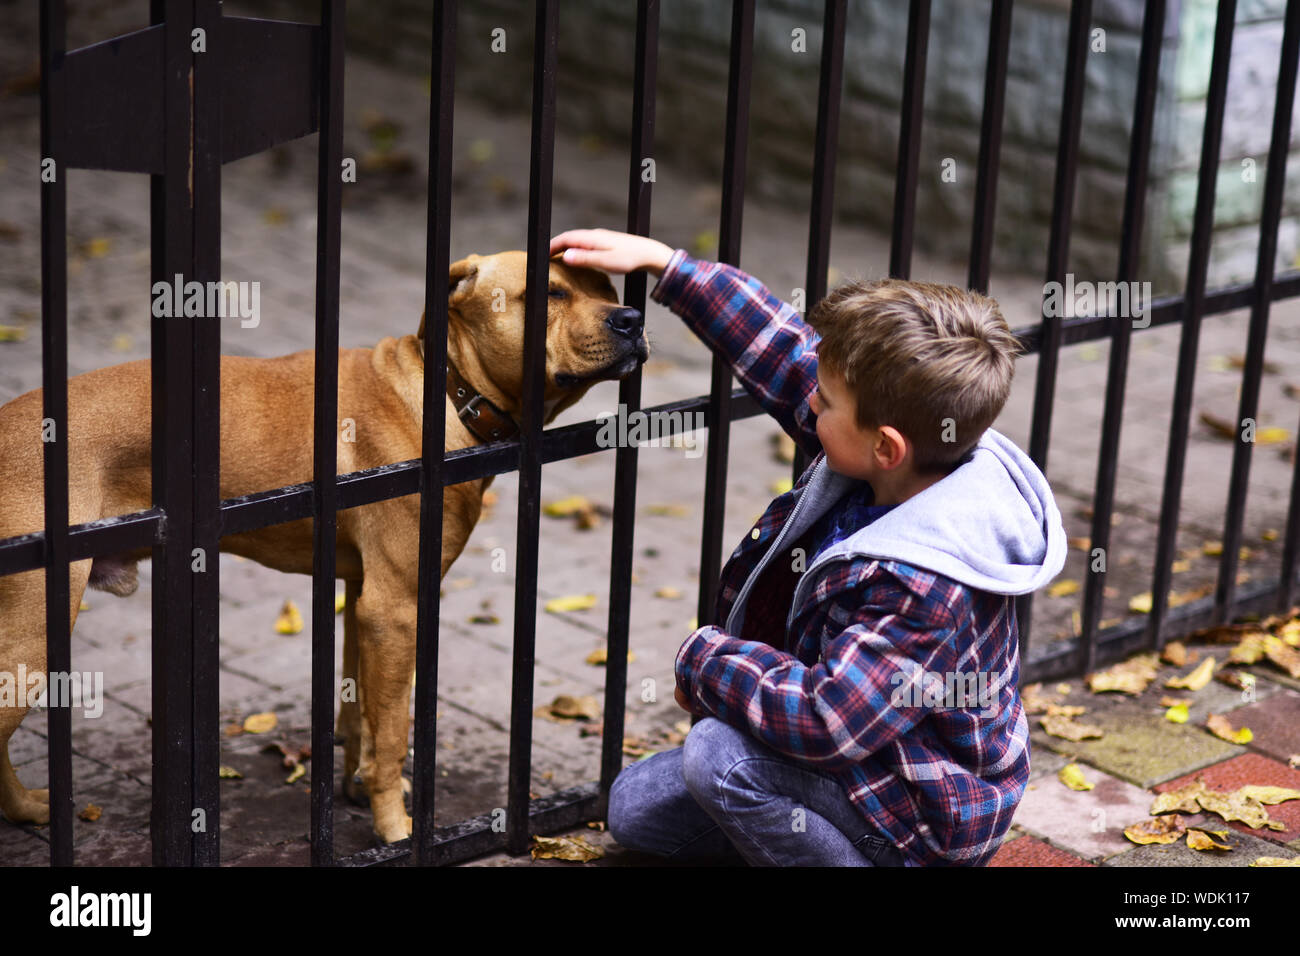 Hunde sind hilfreich. Kleiner Junge spielt mit Hund Hunde im Tierheim. Kleiner Junge tappen Hund auf den Kopf. Ein Hund in Not braucht mehr als ein Dach über dem Kopf. Stockfoto